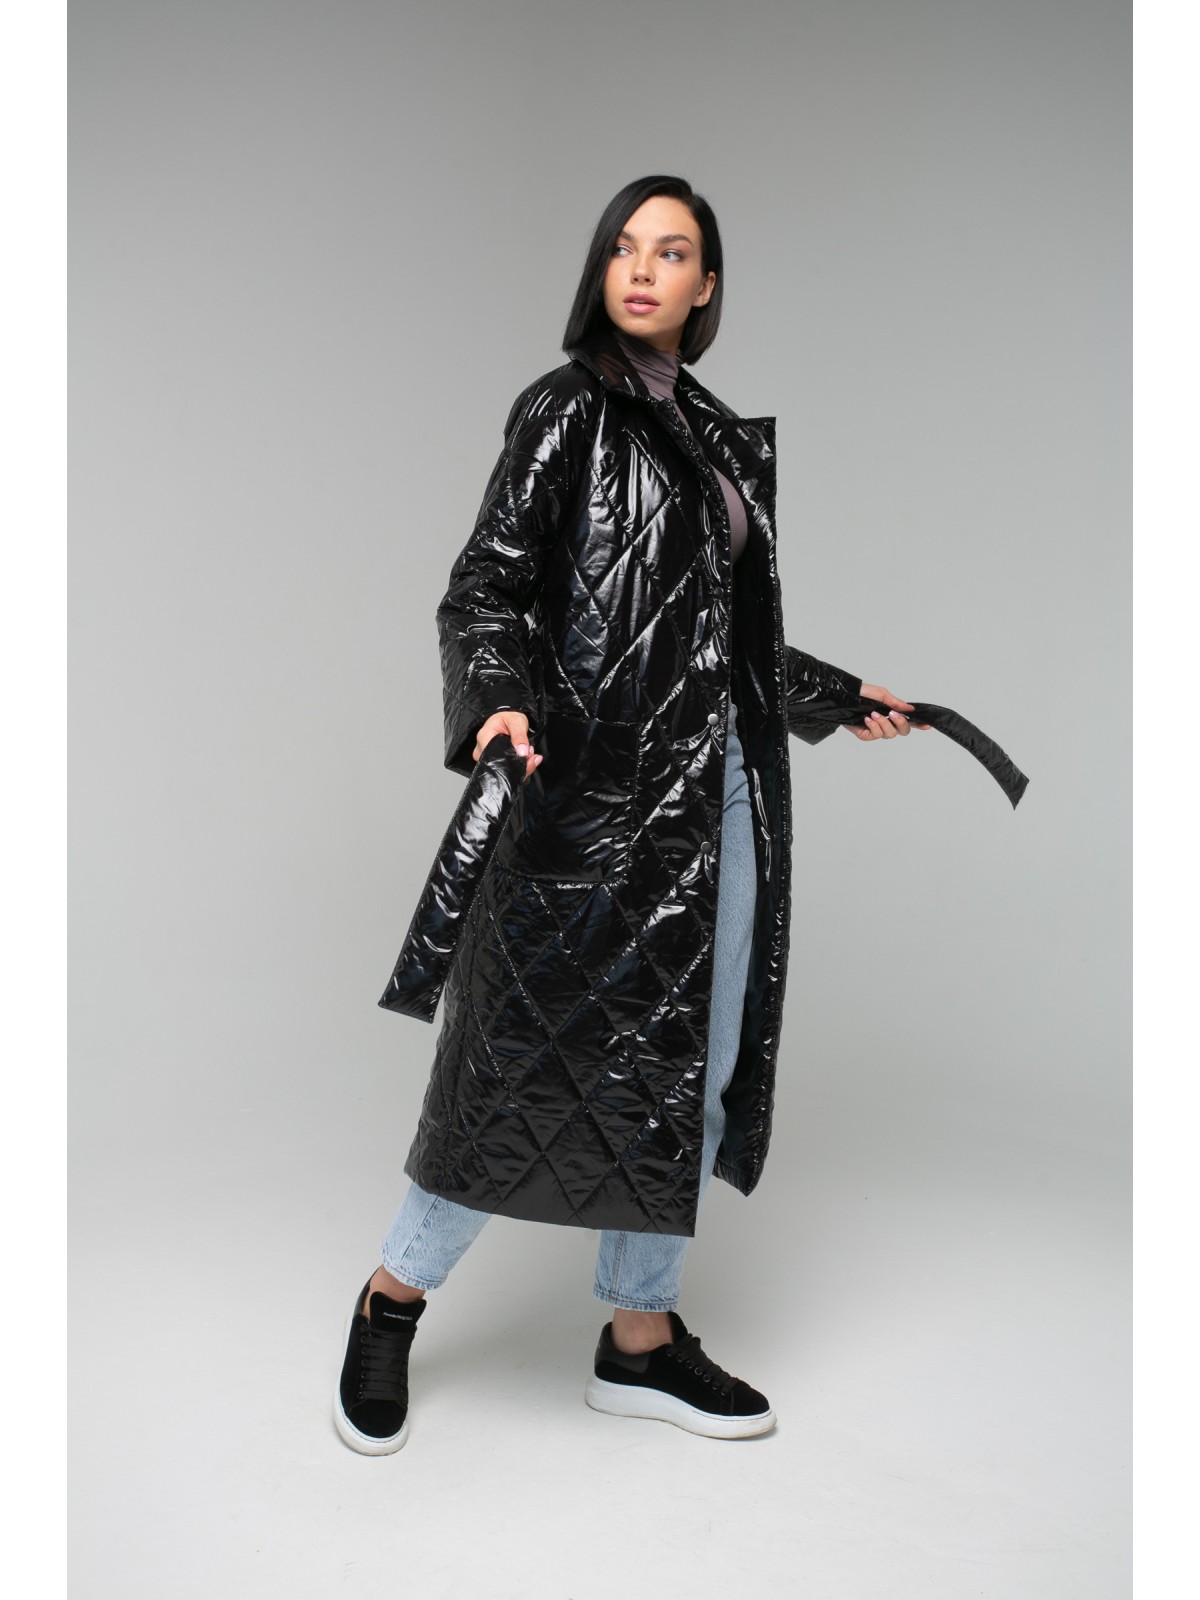 Пальто из плащевой ткани Moncly Black (Лакированный черный)